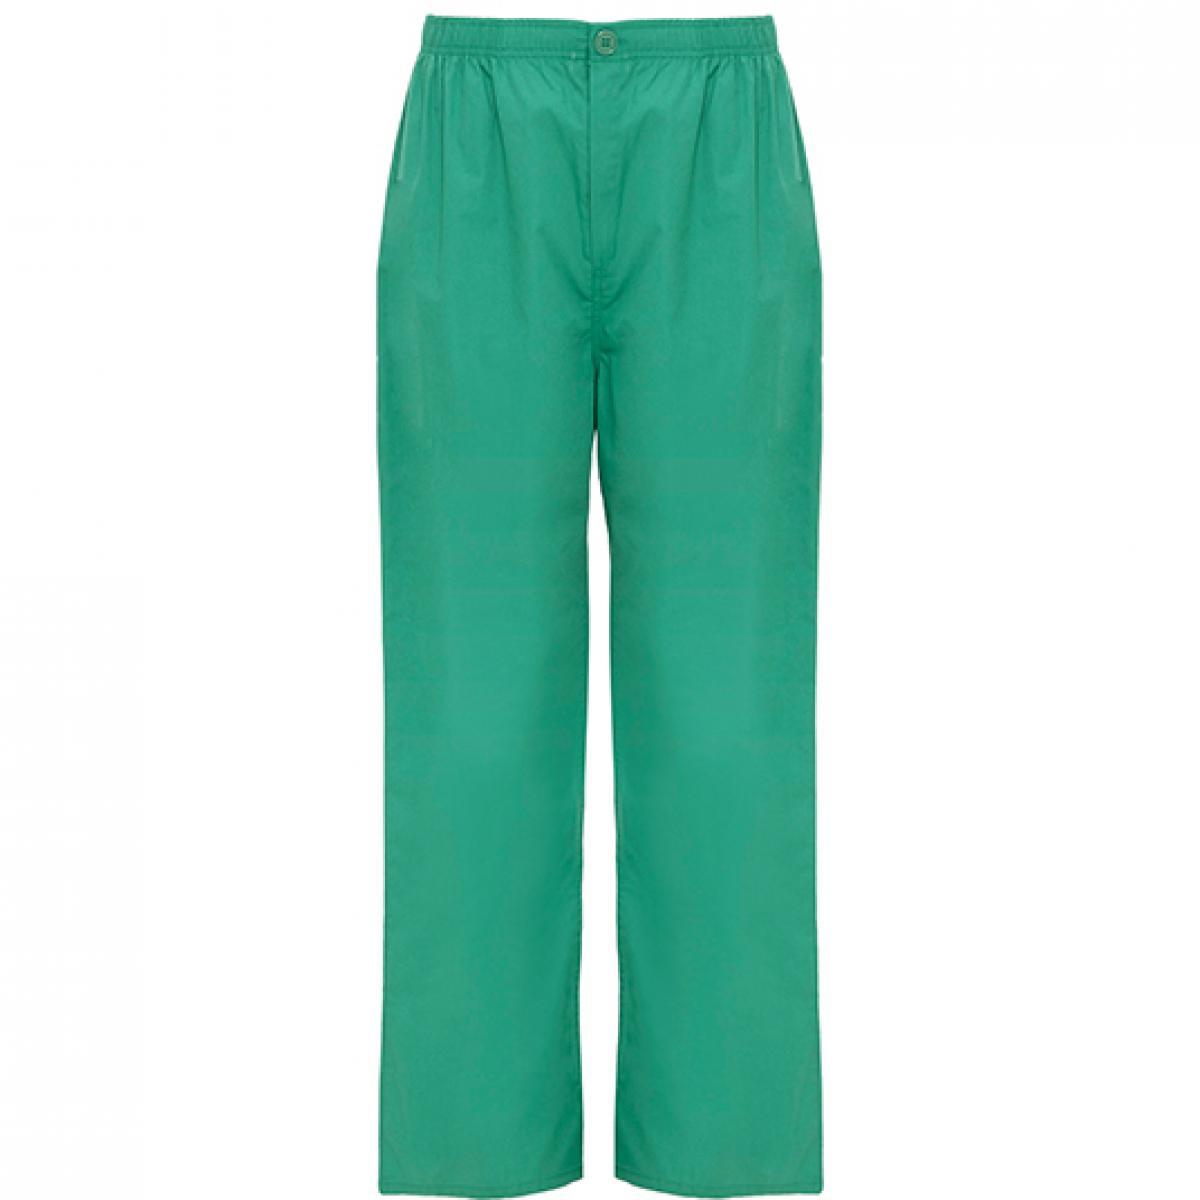 Hersteller: Roly Workwear Herstellernummer: PA9097 Artikelbezeichnung: Vademecum Pull on trousers - Pfegerhose Farbe: Lab Green 17